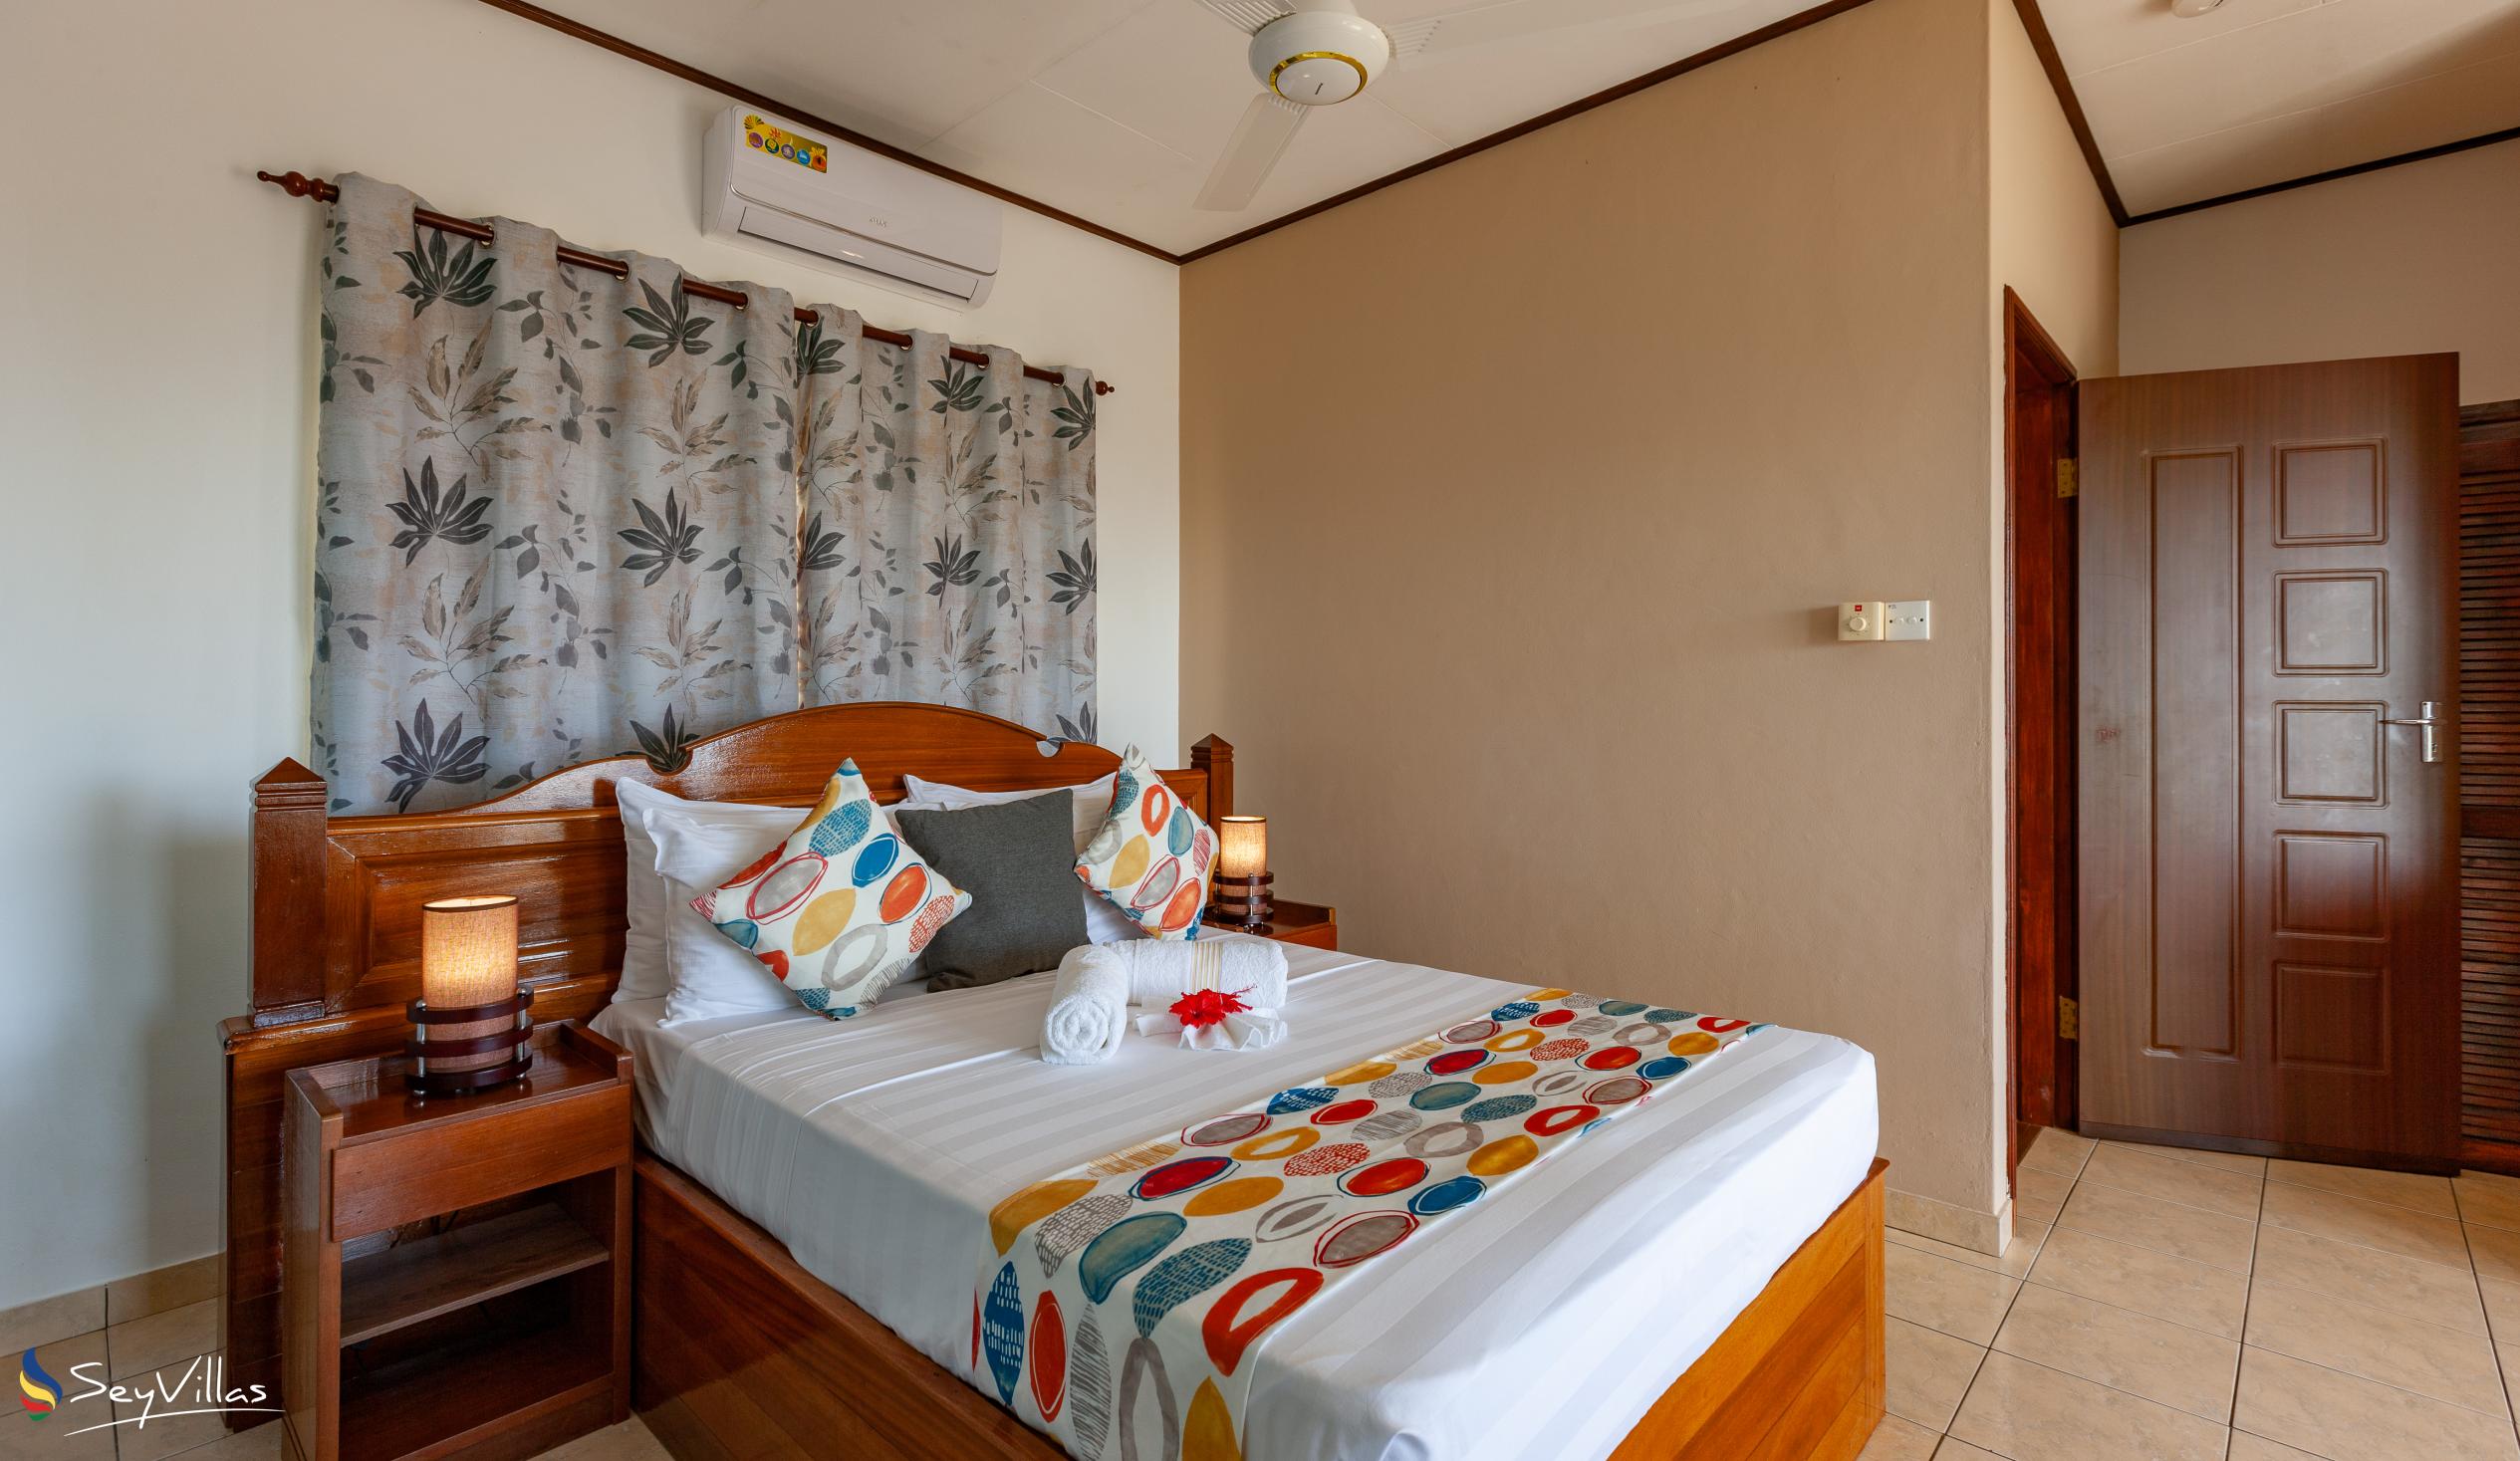 Foto 10: Saria Self Catering - Appartamento con 3 camere - Praslin (Seychelles)